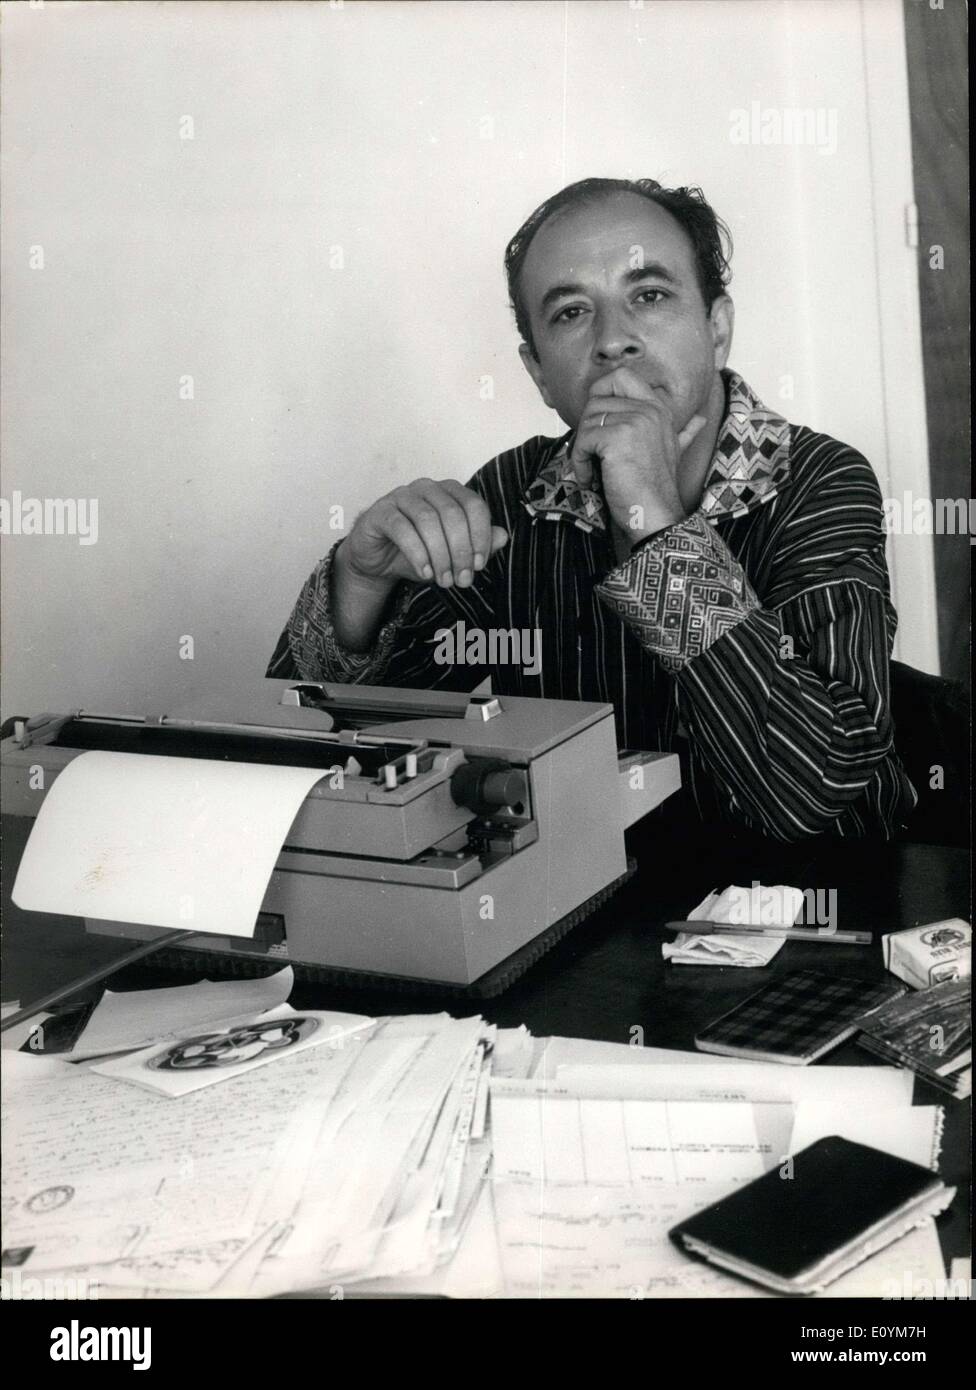 Sett. 18, 1970 - Qui è un ritratto dello scrittore francese Michel Butor che è stata presa alla sua proprietà a Nizza. Foto Stock